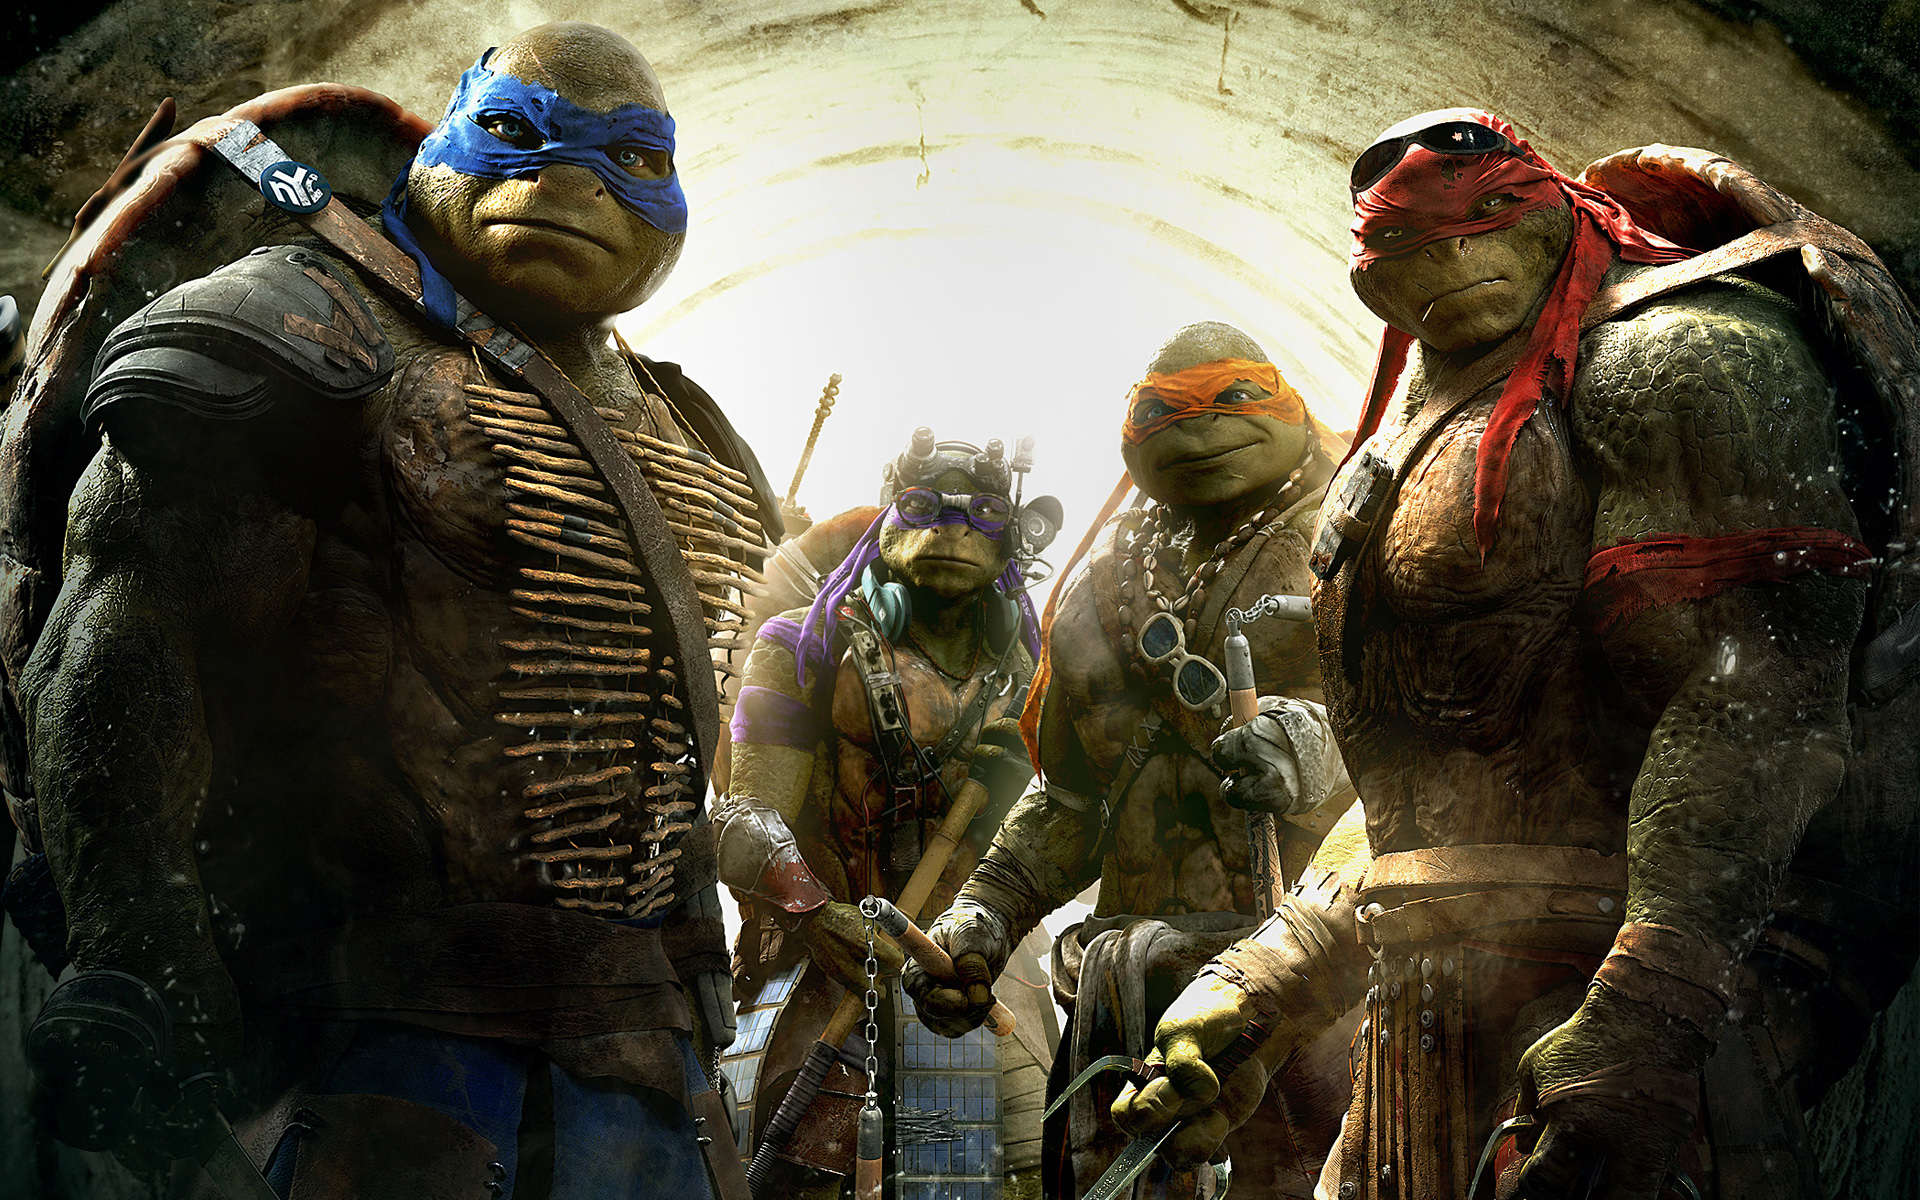 Teenage Mutant Ninja Turtles (2014) HD wallpapers, Desktop wallpaper - most viewed